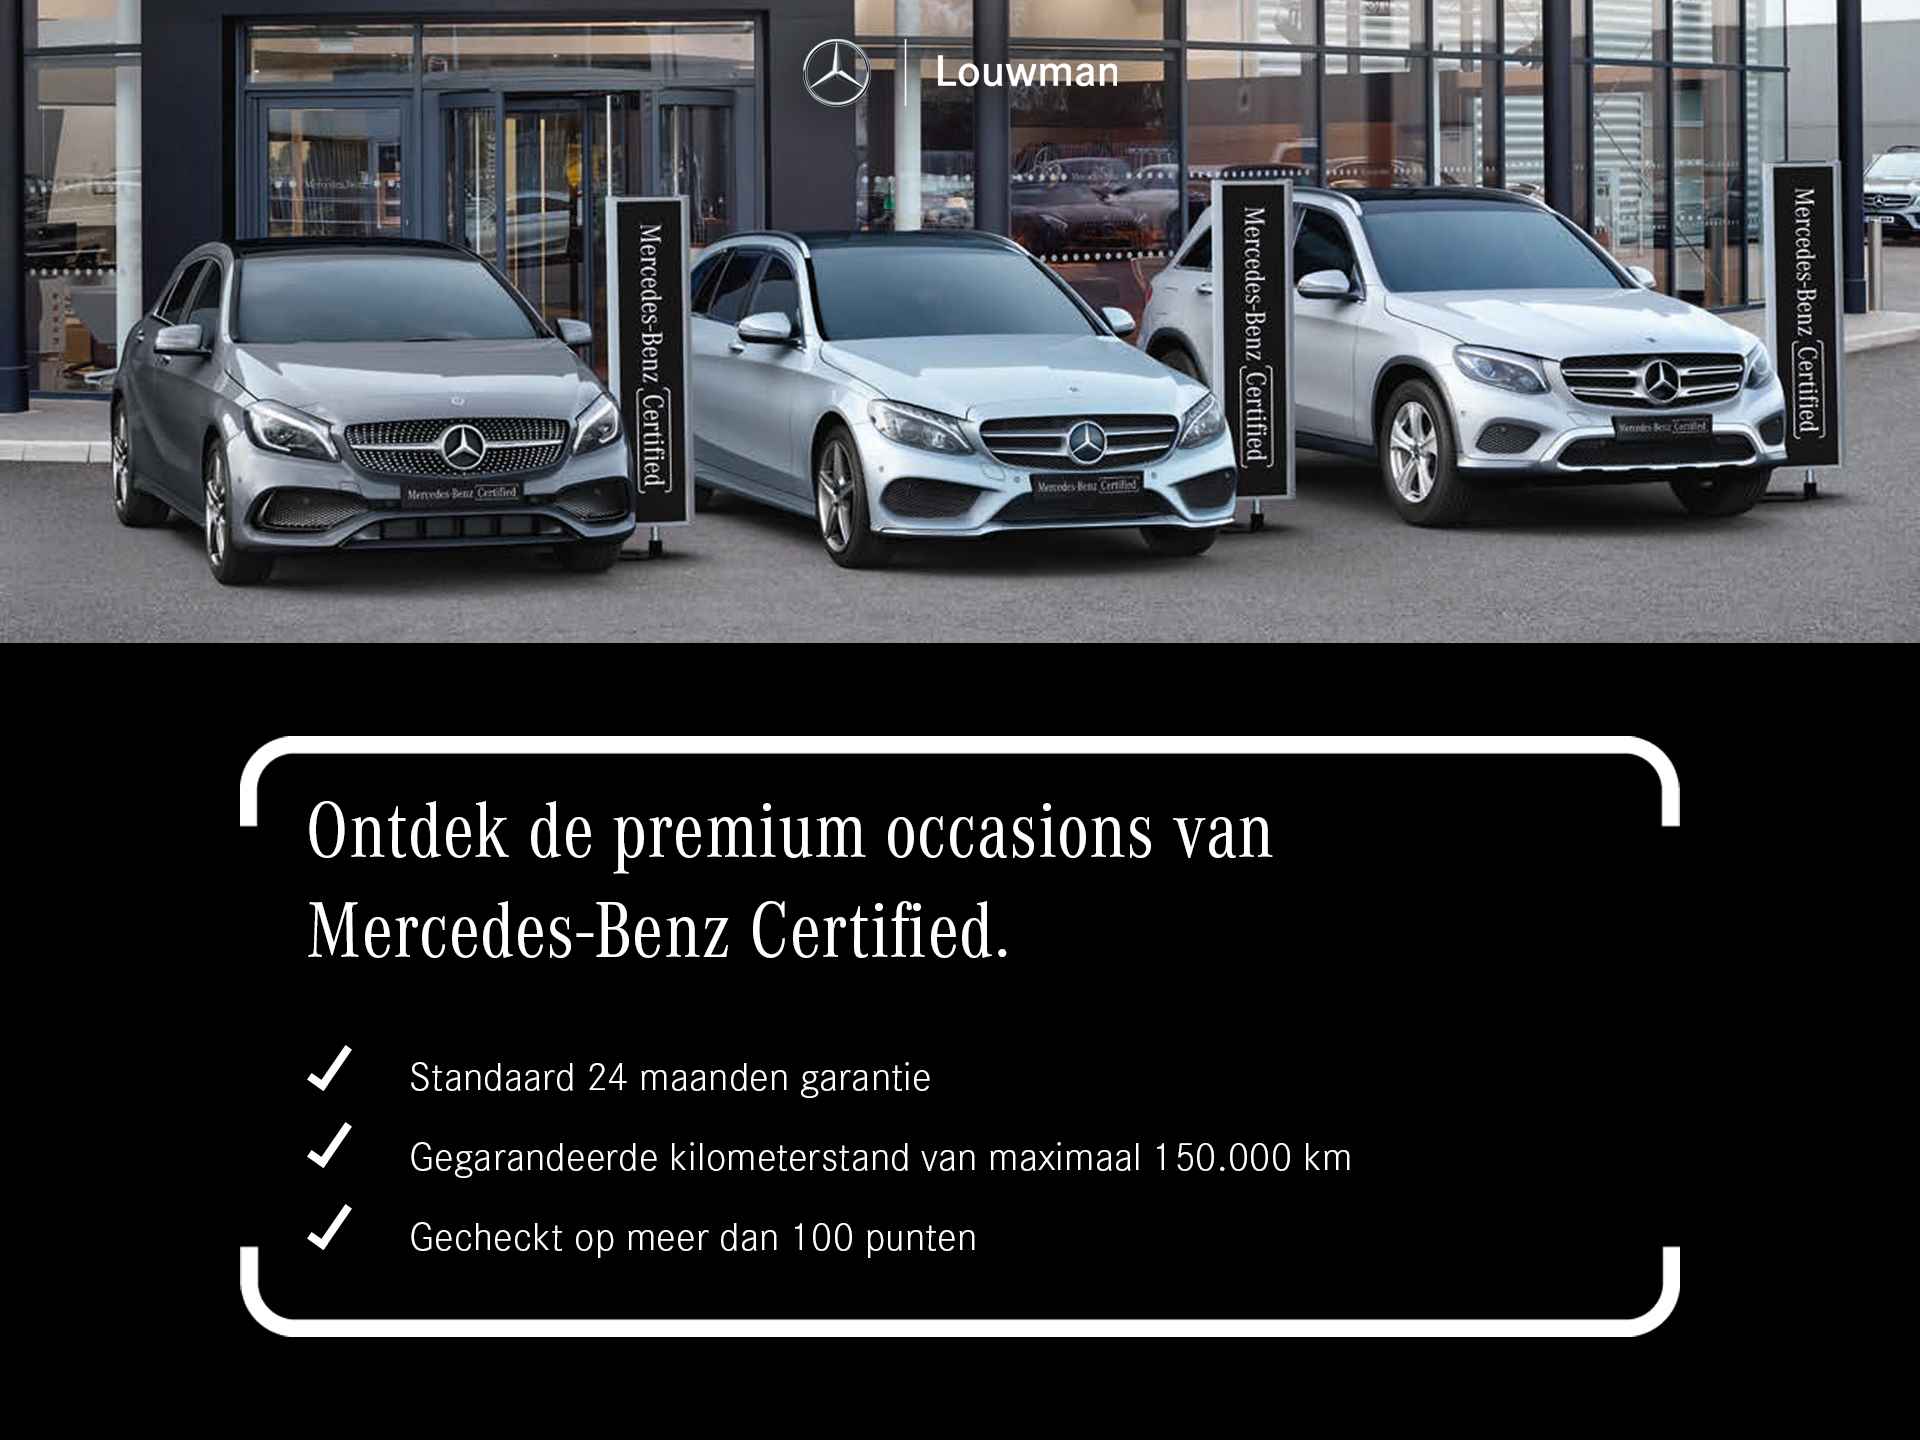 Mercedes-Benz B-Klasse 250 e AMG Line Limited | Panoramadak | Sfeerverlichting | Apple Carplay | Elektrische Achterklep | Inclusief 24 maanden MB Certified garantie voor Europa. - 43/44